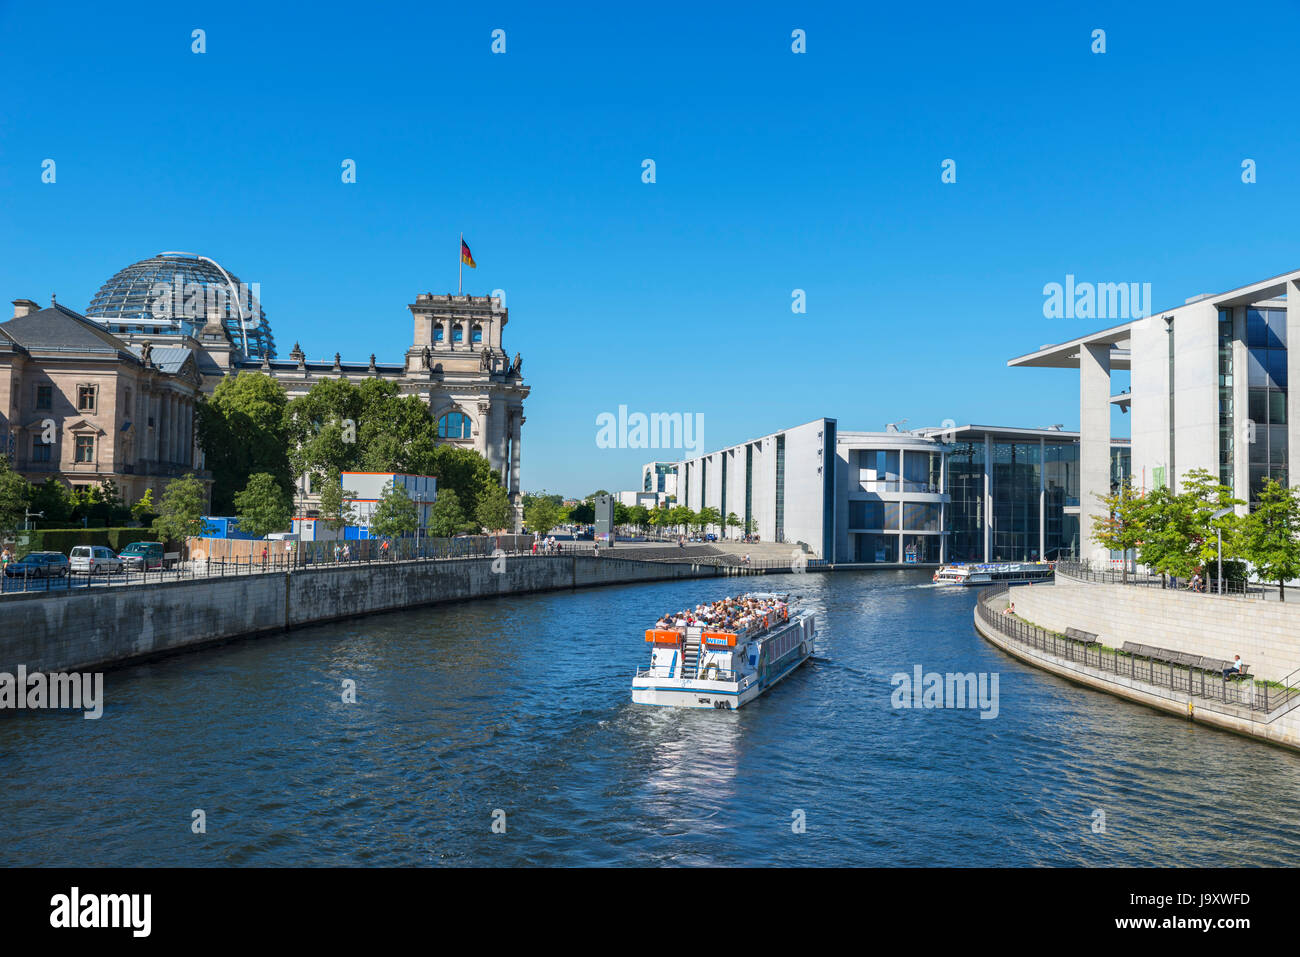 Bateau de croisière sur la rivière Spree en face de l'édifice du parlement allemand, Mitte, Berlin, Allemagne Banque D'Images